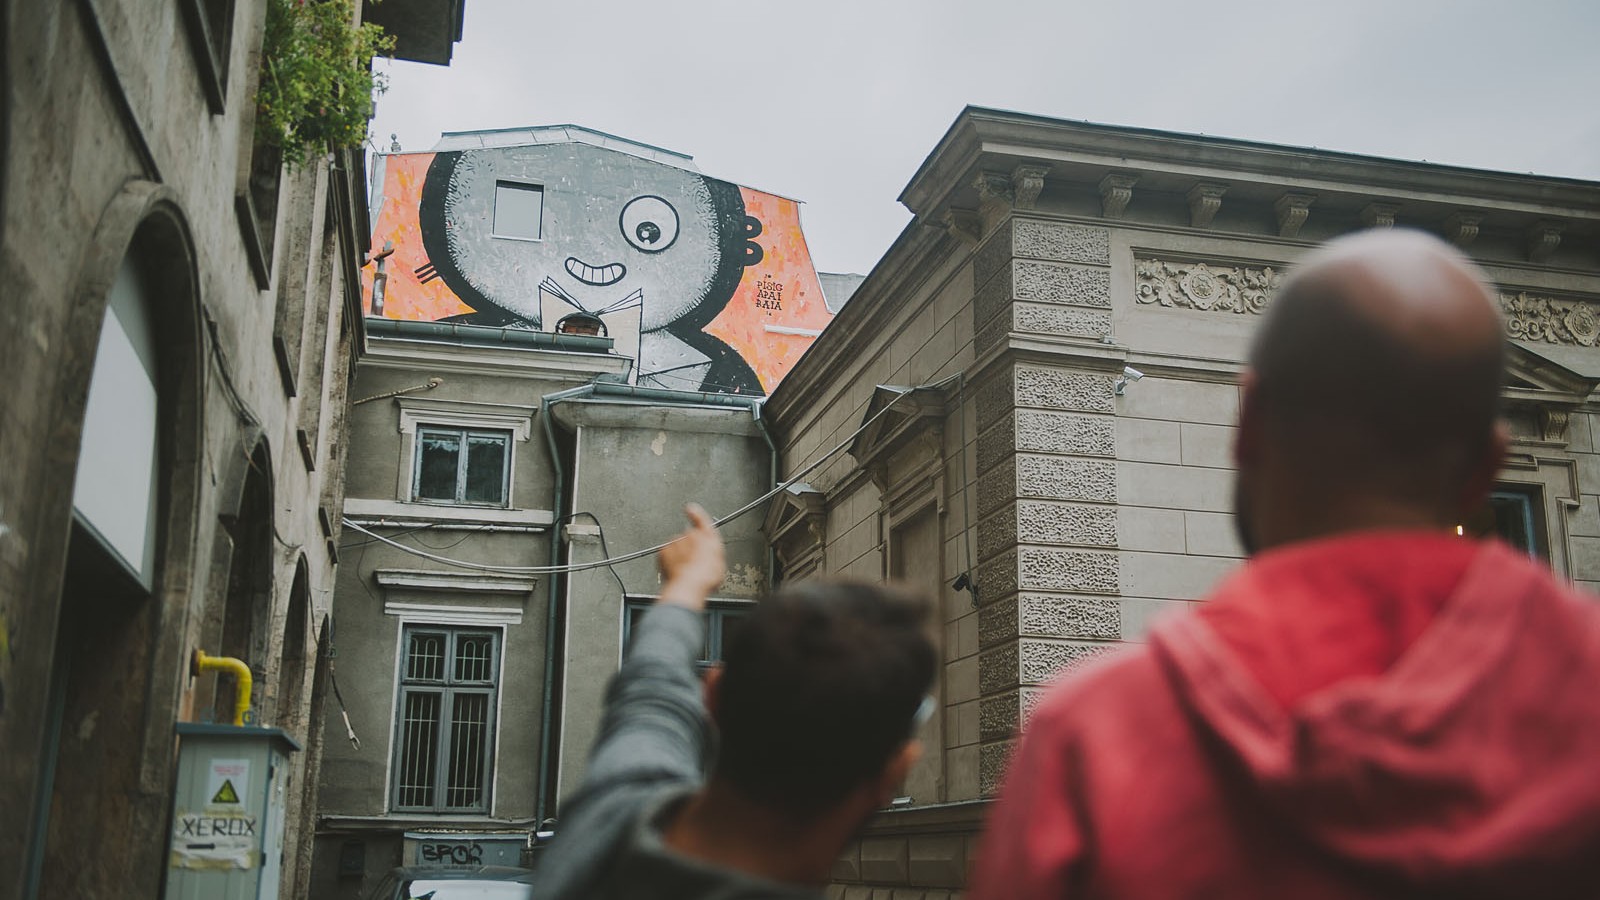 Explore Bucharest Through Street Art - online event